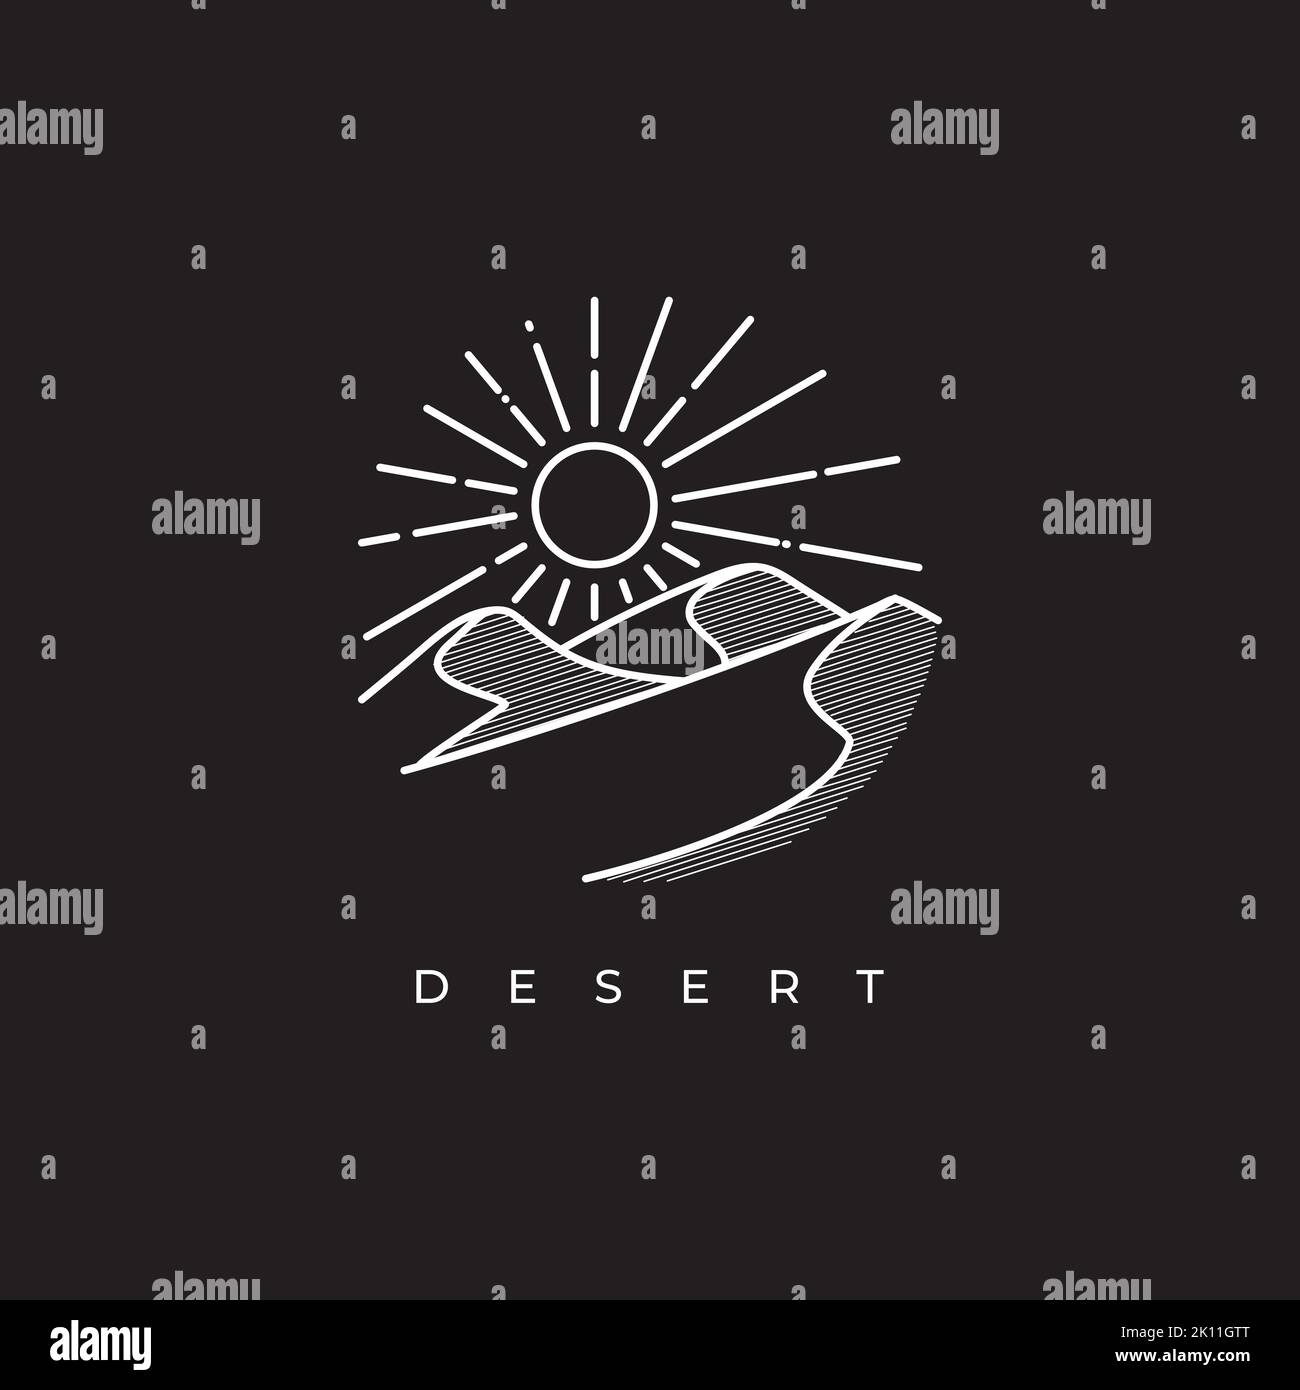 Desert logo design template. Mountain hill with sunshine illustration Stock Vector